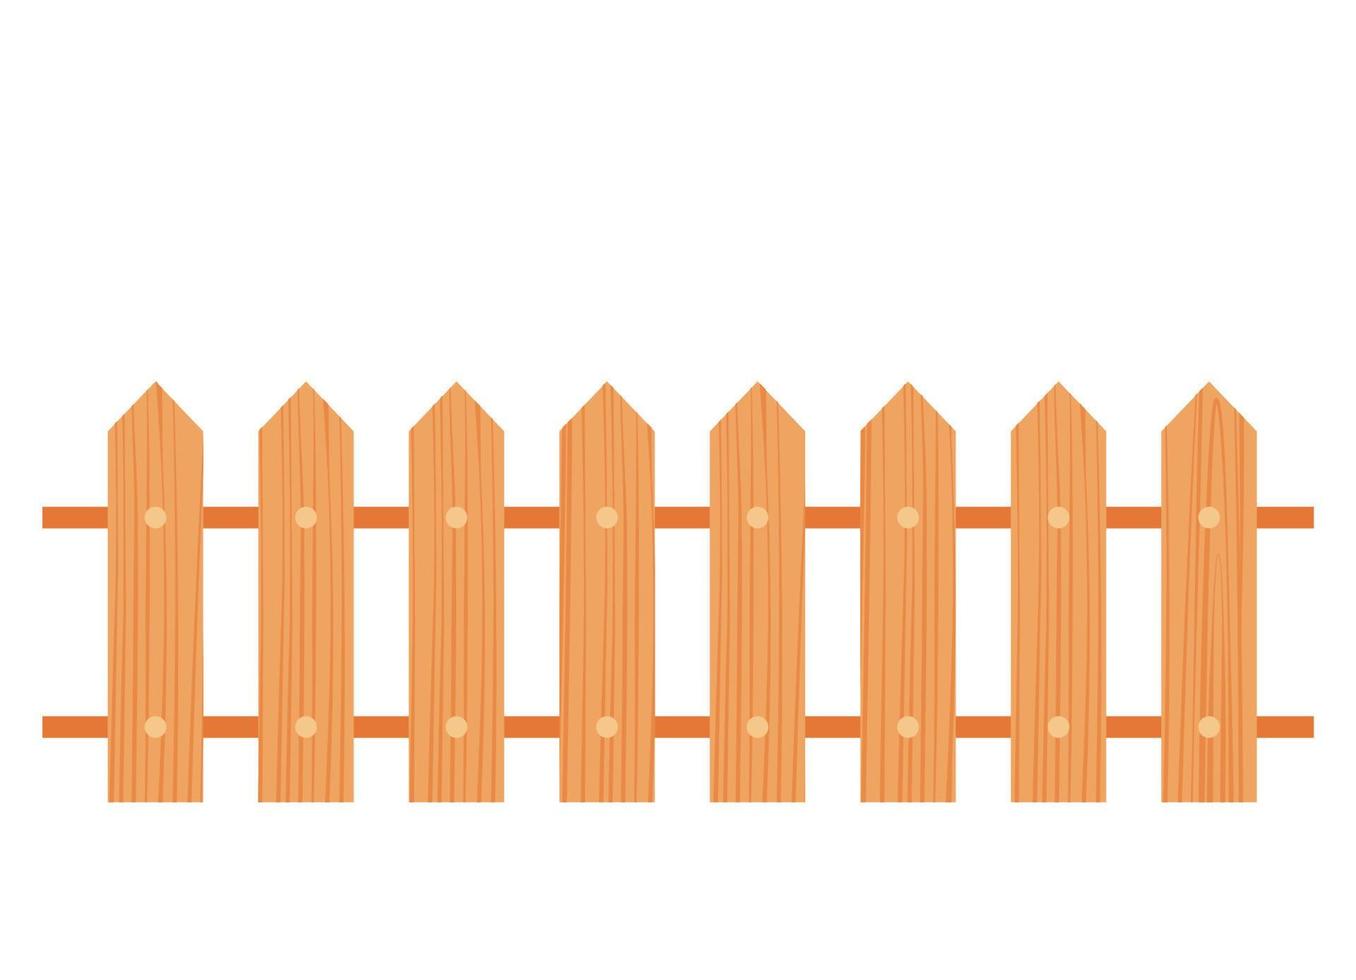 valla de madera aislada sobre fondo blanco con tablones paralelos viejos. ilustración vectorial vector